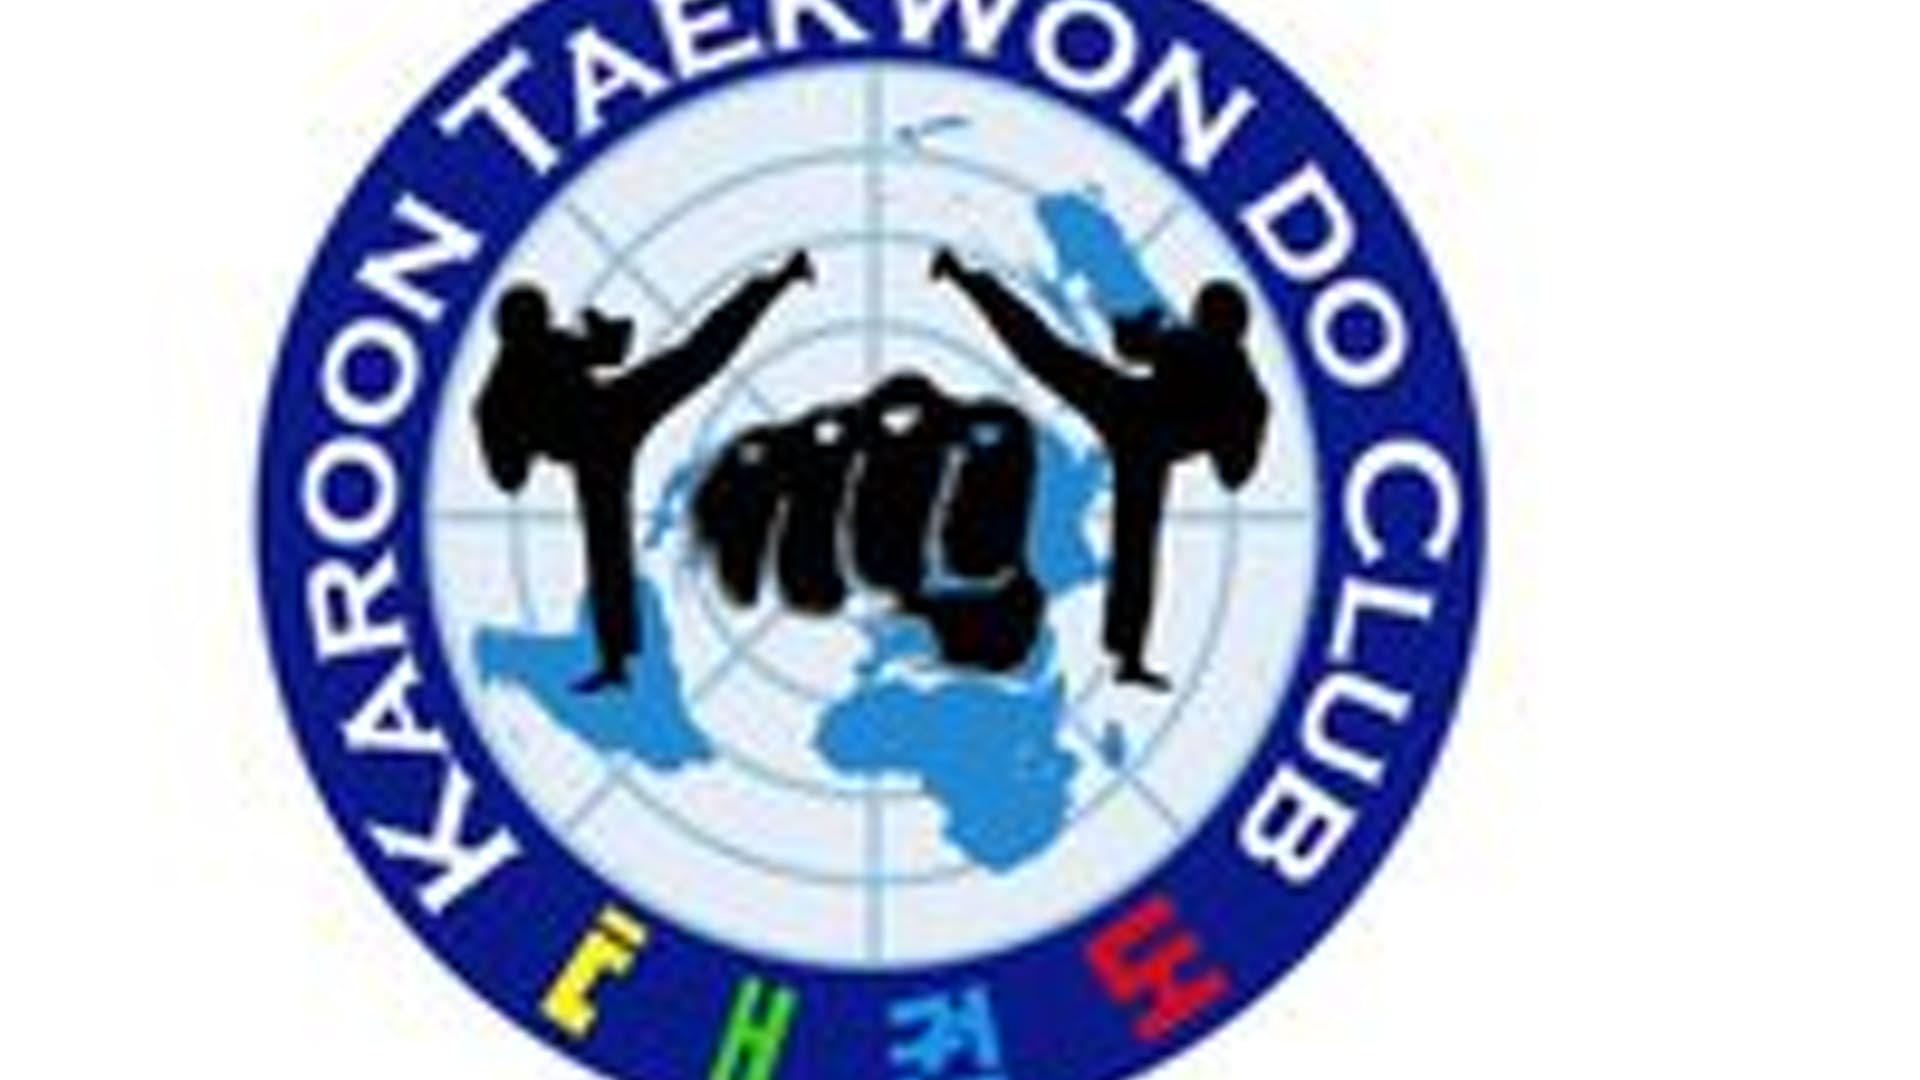 Karoon Taekwondo Club, Activity Hall photo #1